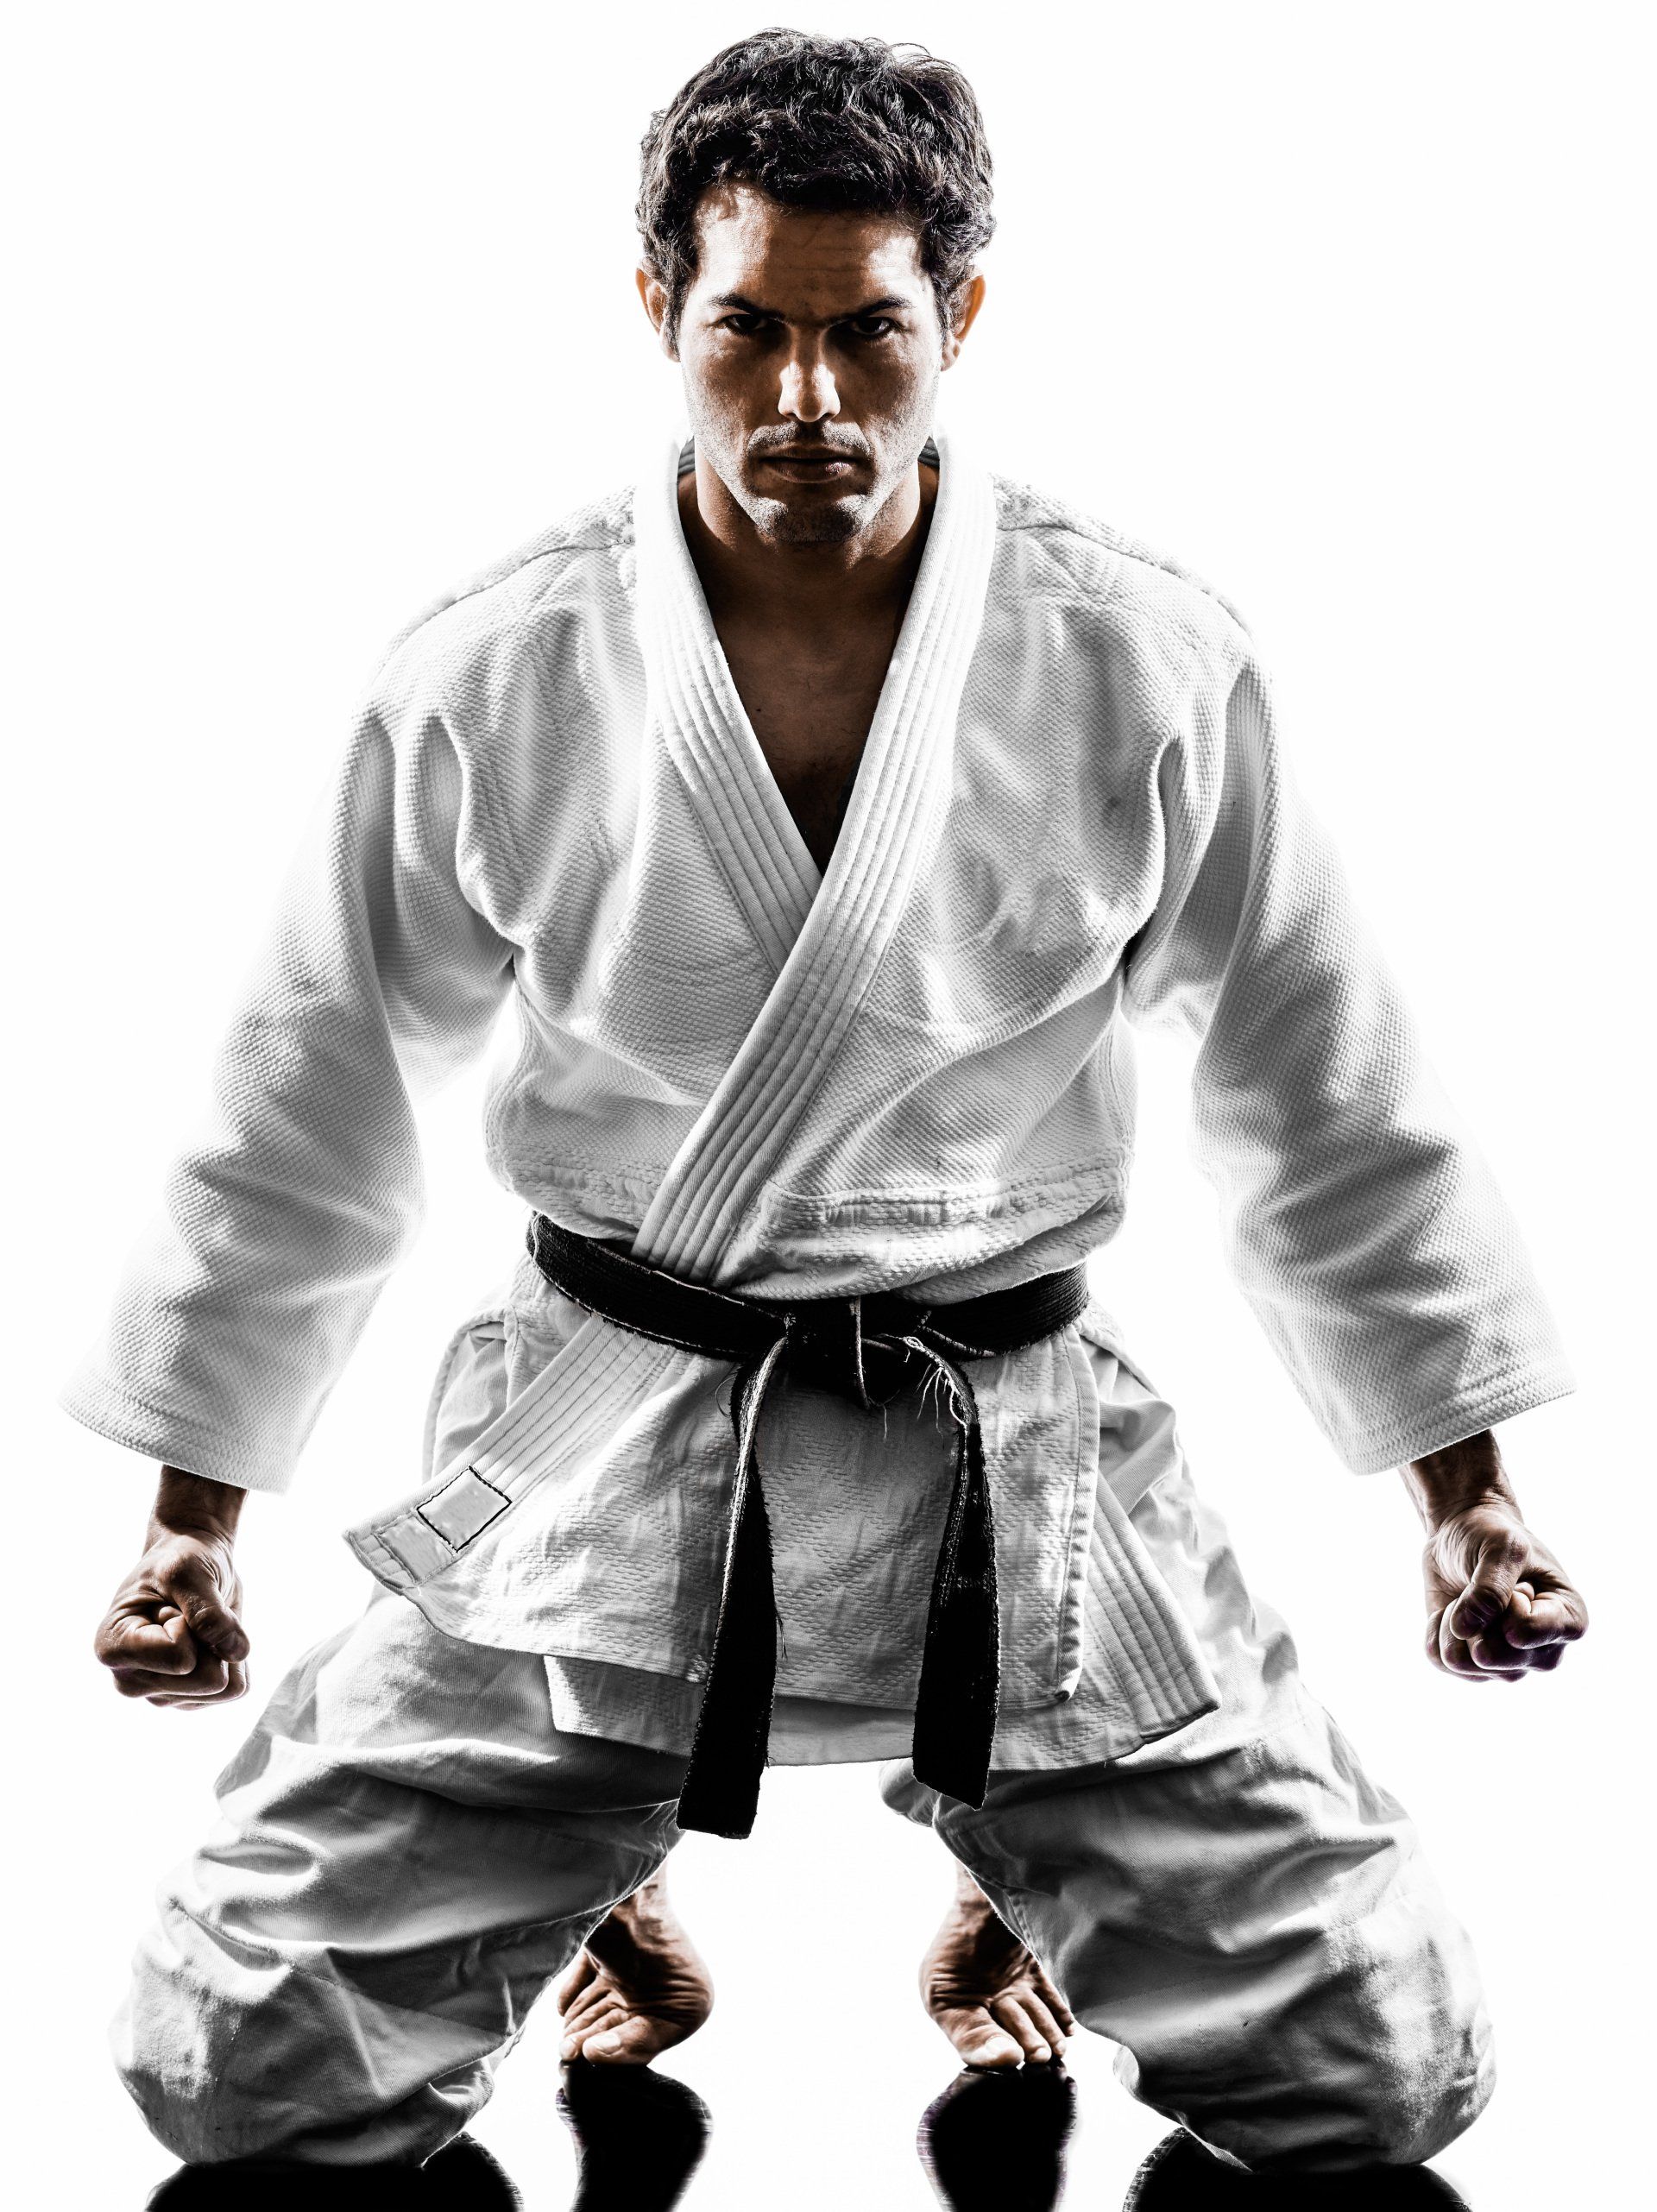 karate man wearing white karate clothes